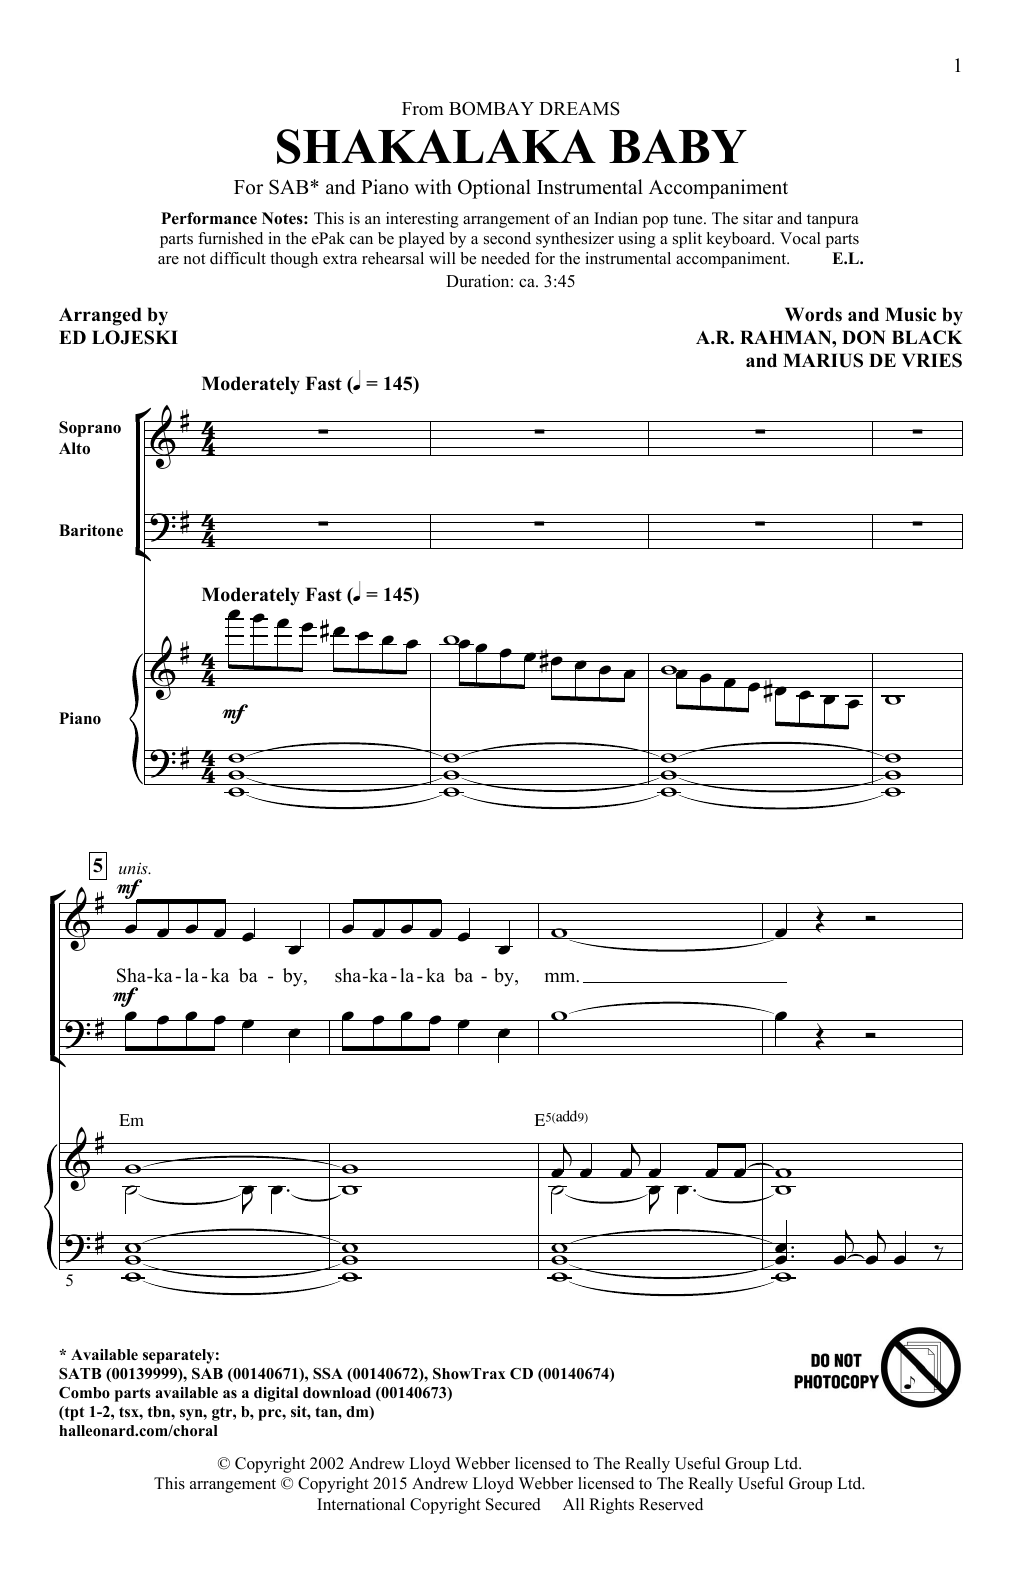 Ed Lojeski Shakalaka Baby (from Bombay Dreams) Sheet Music Notes & Chords for SAB - Download or Print PDF